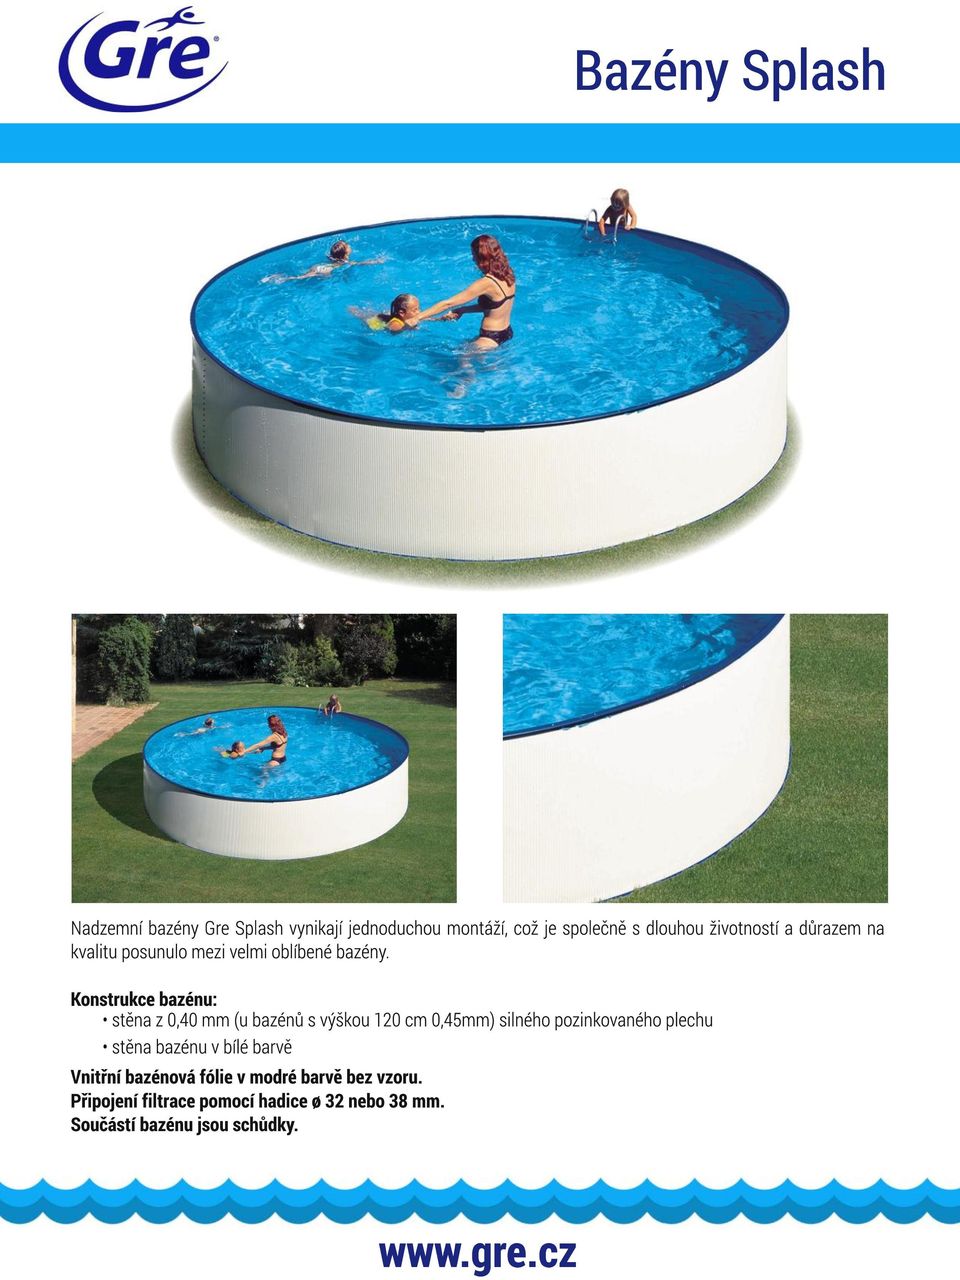 Konstrukce bazénu: stěna z 0,40 mm (u bazénů s výškou 1 20 cm 0,45mm) silného pozinkovaného plechu stěna